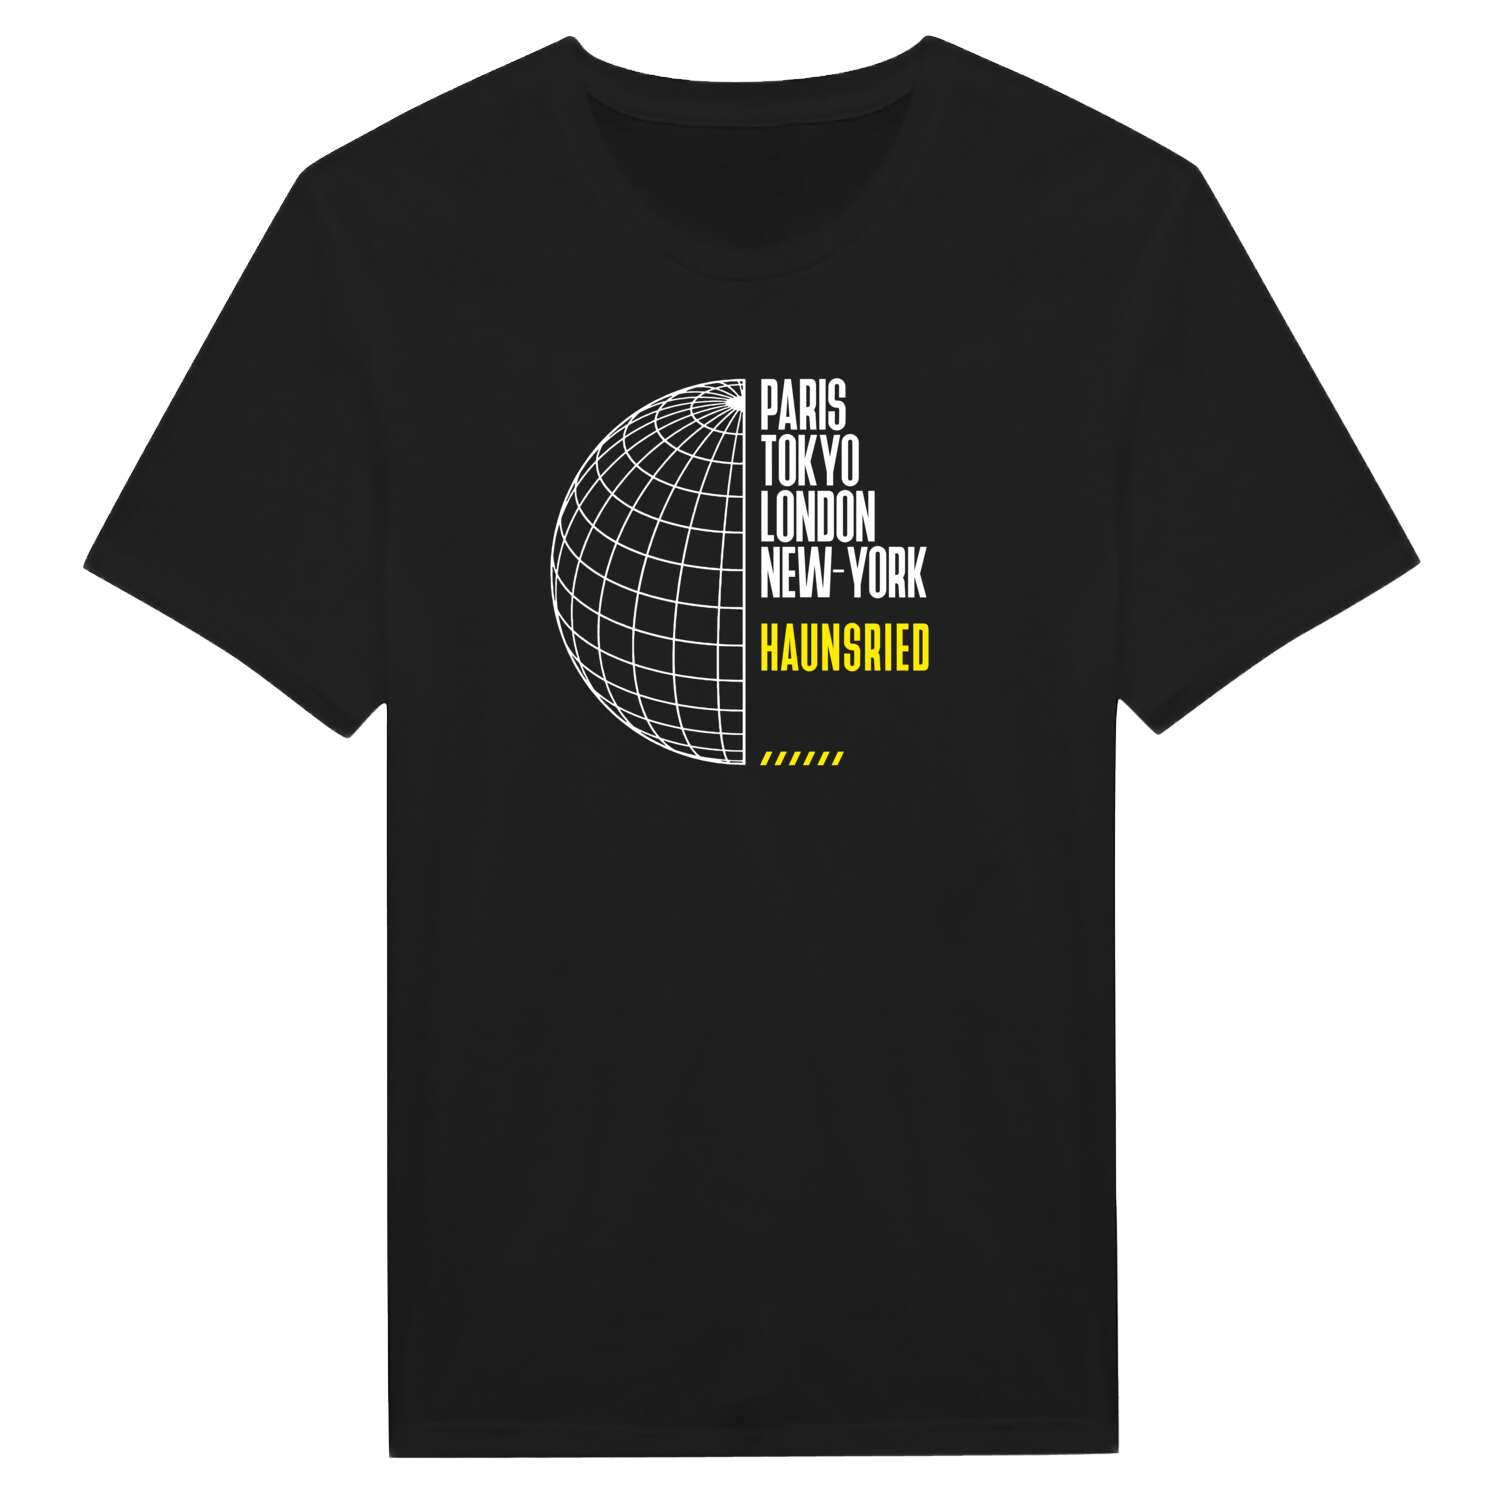 Haunsried T-Shirt »Paris Tokyo London«